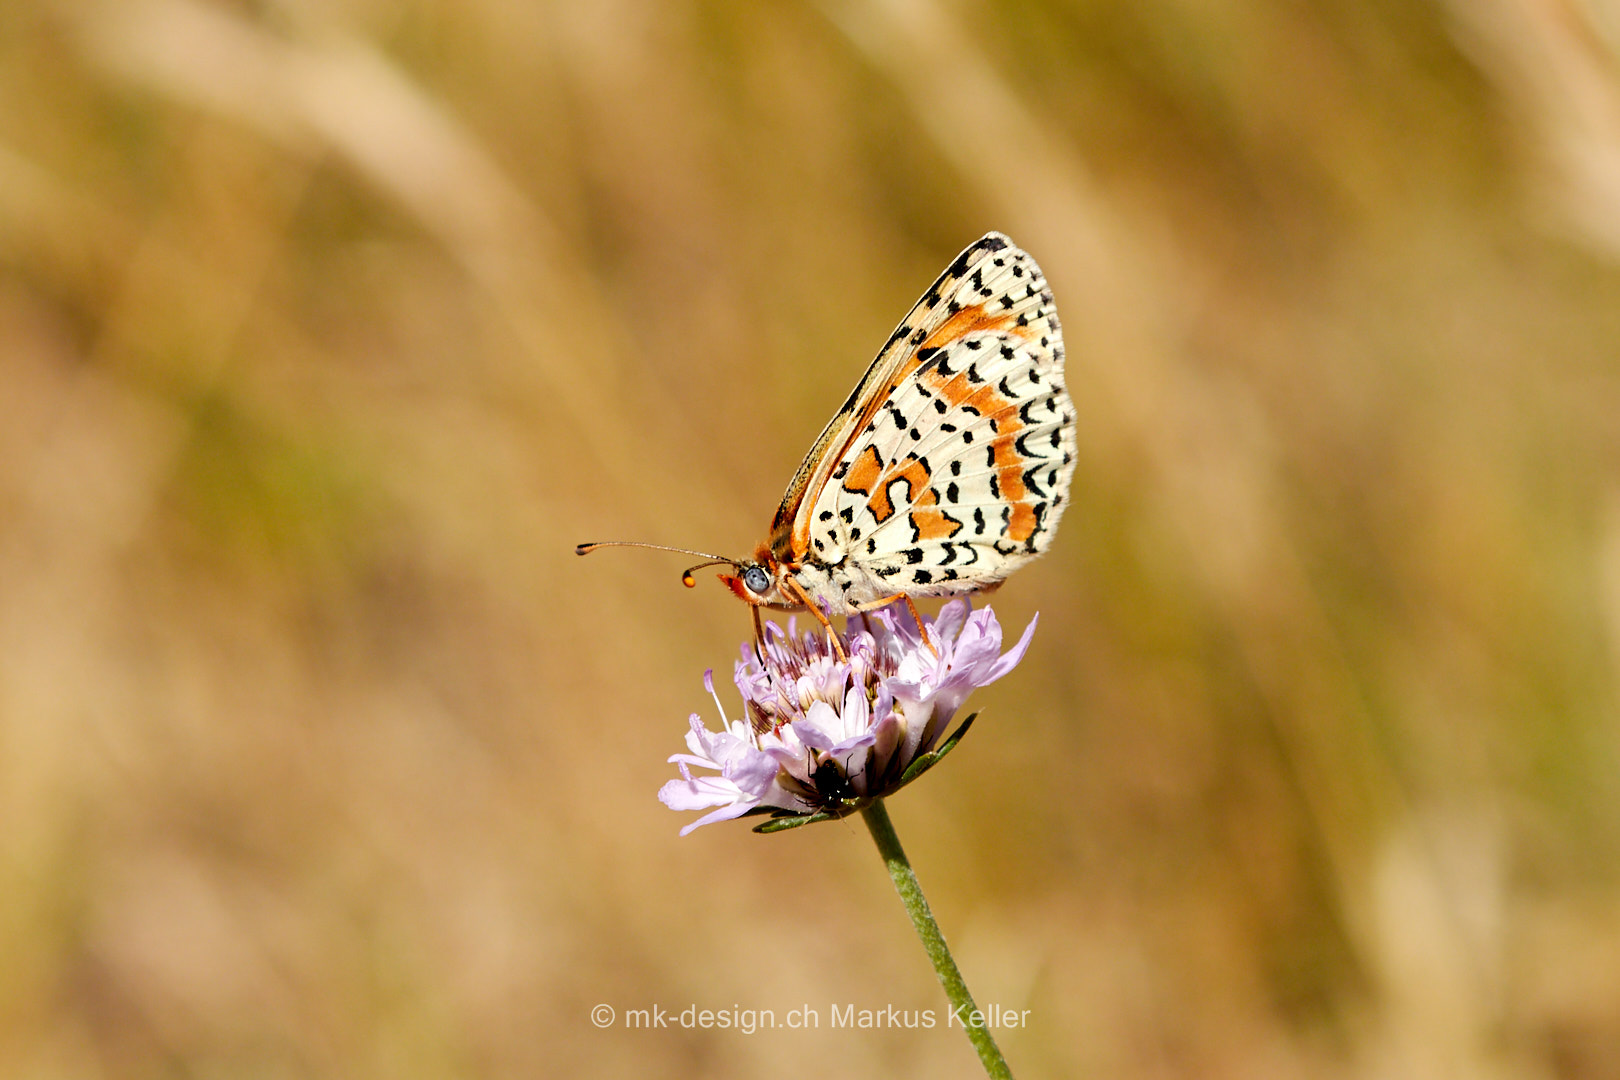 Ort   Carcassonne   Tier   Insekte   Schmetterling/Raupe   Goldener Scheckenfalter   